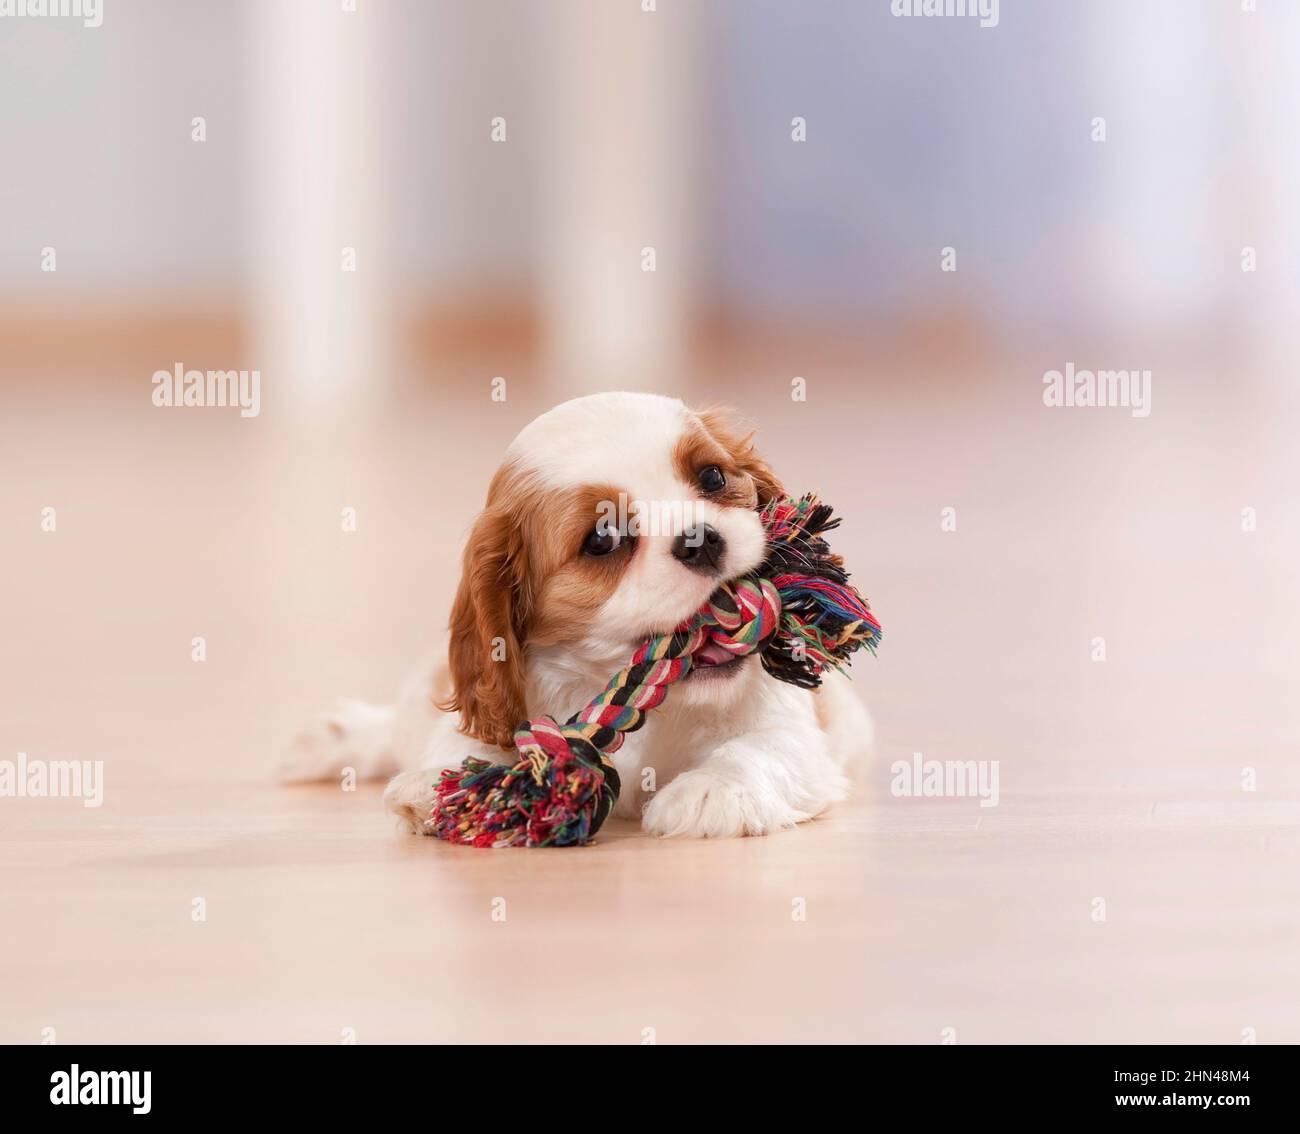 Cavalier re Charles Spaniel. Un cucciolo si trova sul pavimento in parquet e mastica su una rugiada colorata Foto Stock